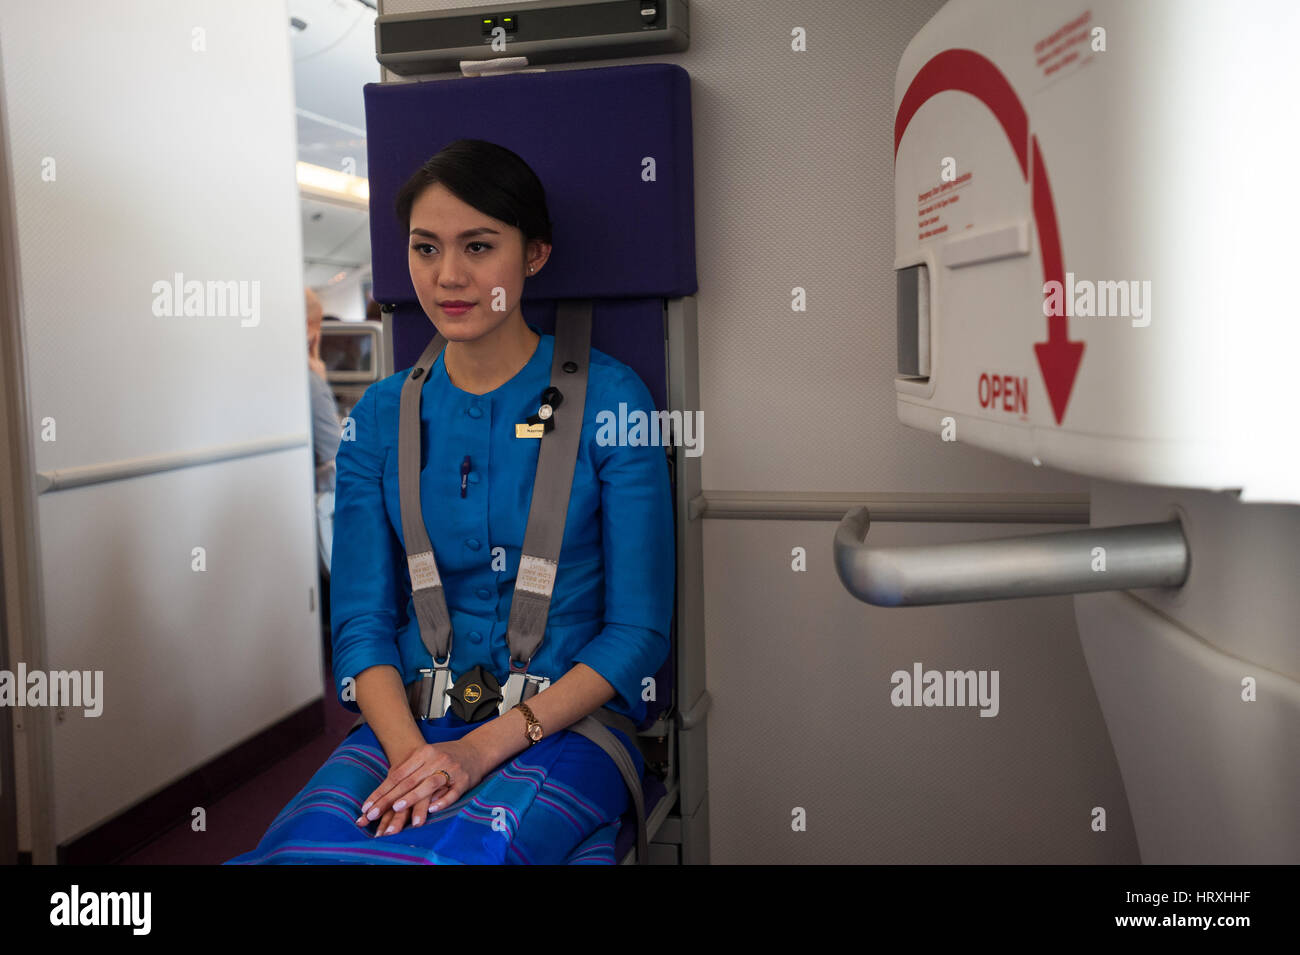 25.01.2017, Singapore, Repubblica di Singapore, in asia - Un Thai Airways Flight attendant su un volo da Singapore a Bangkok. Foto Stock